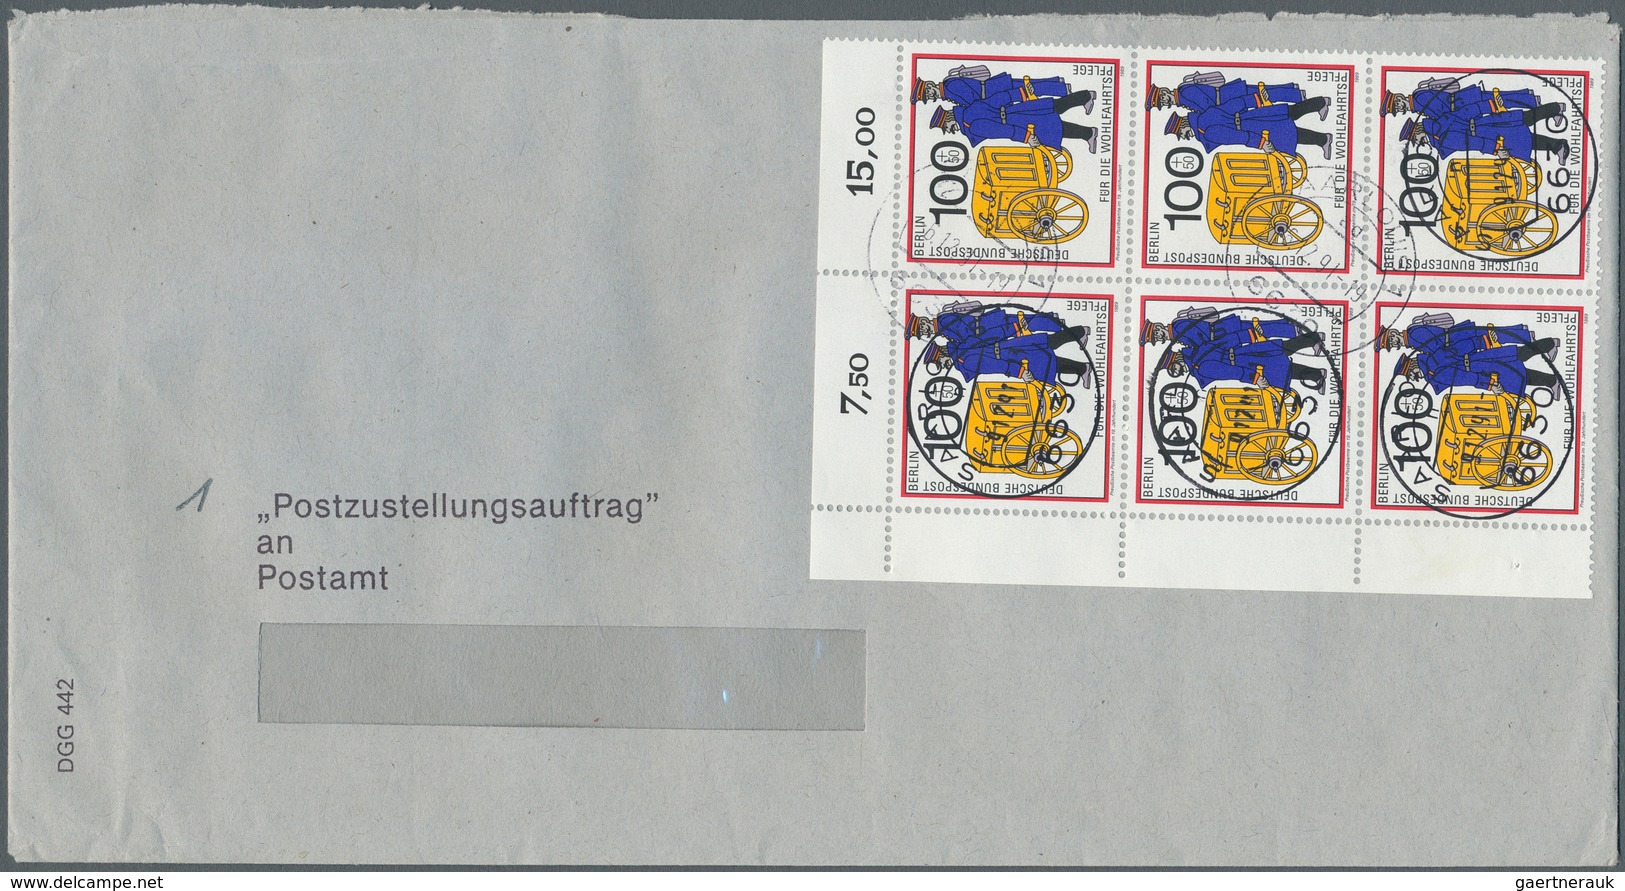 32528 Berlin: 1988/1992, Partie von ca. 127 Bedarfsbriefen, meist Gerichtsvollzieher-Zustellungsaufträge,